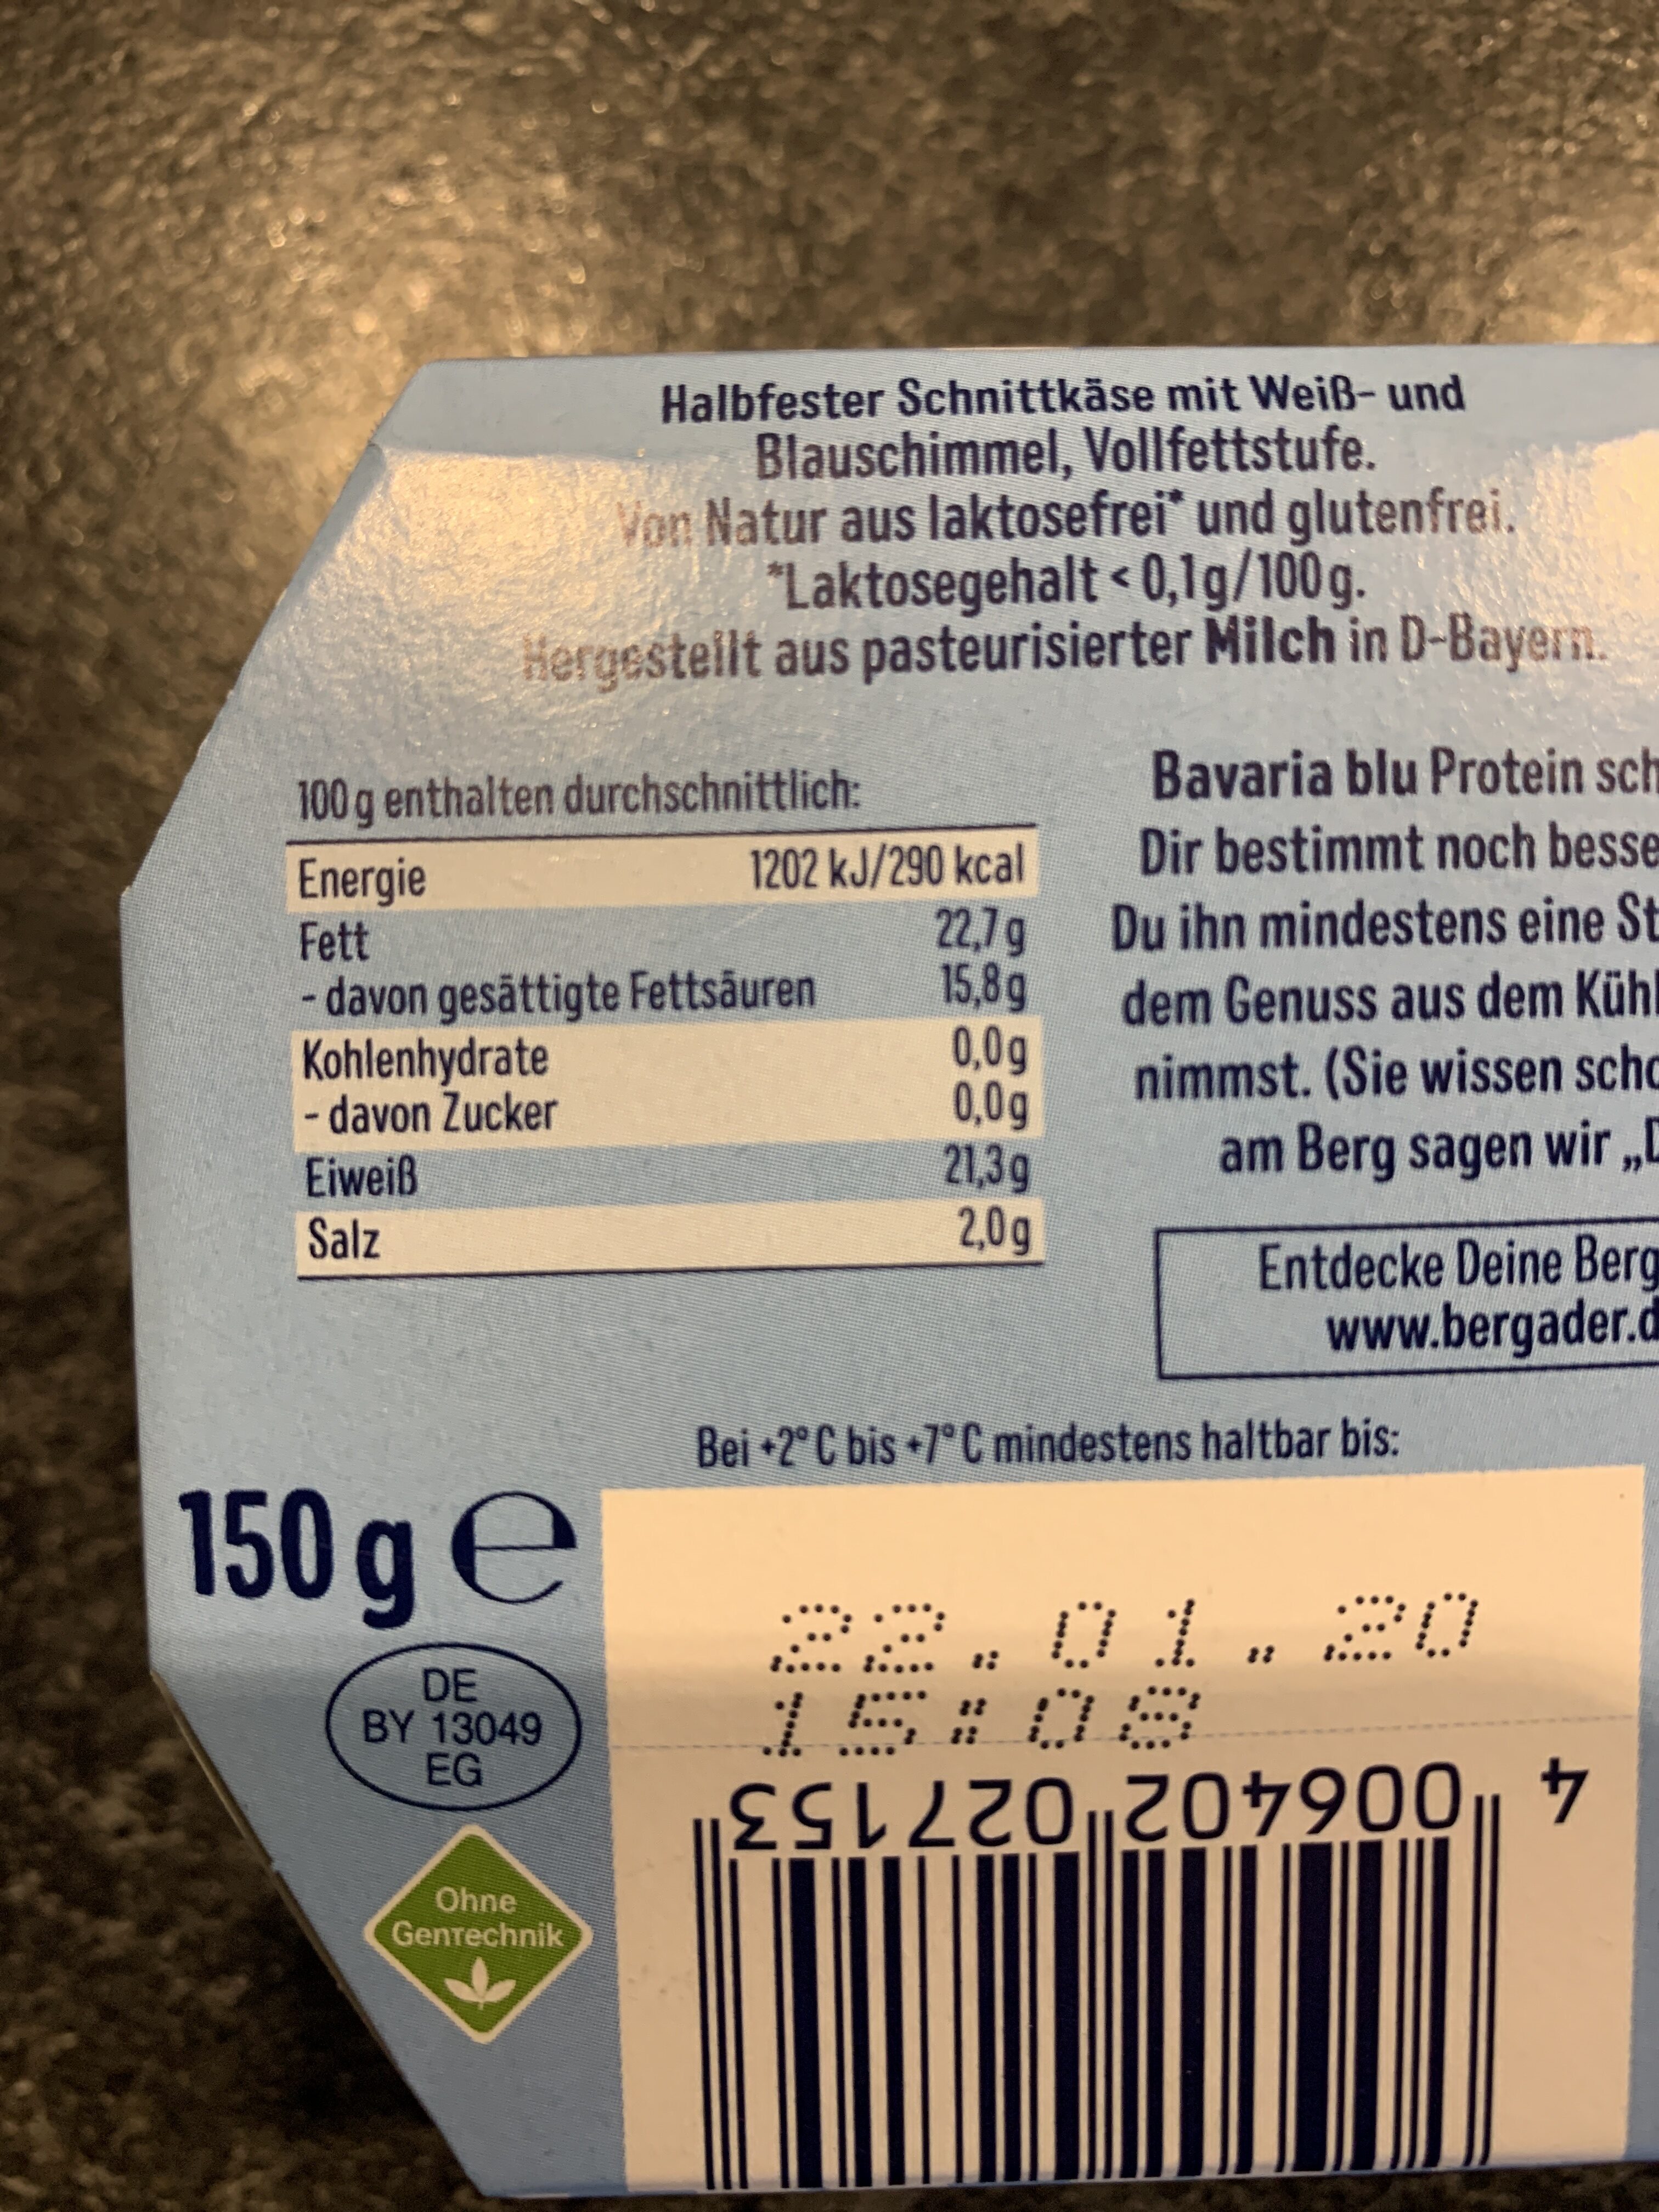 Bavaria blu 30g Protein - Nährwertangaben